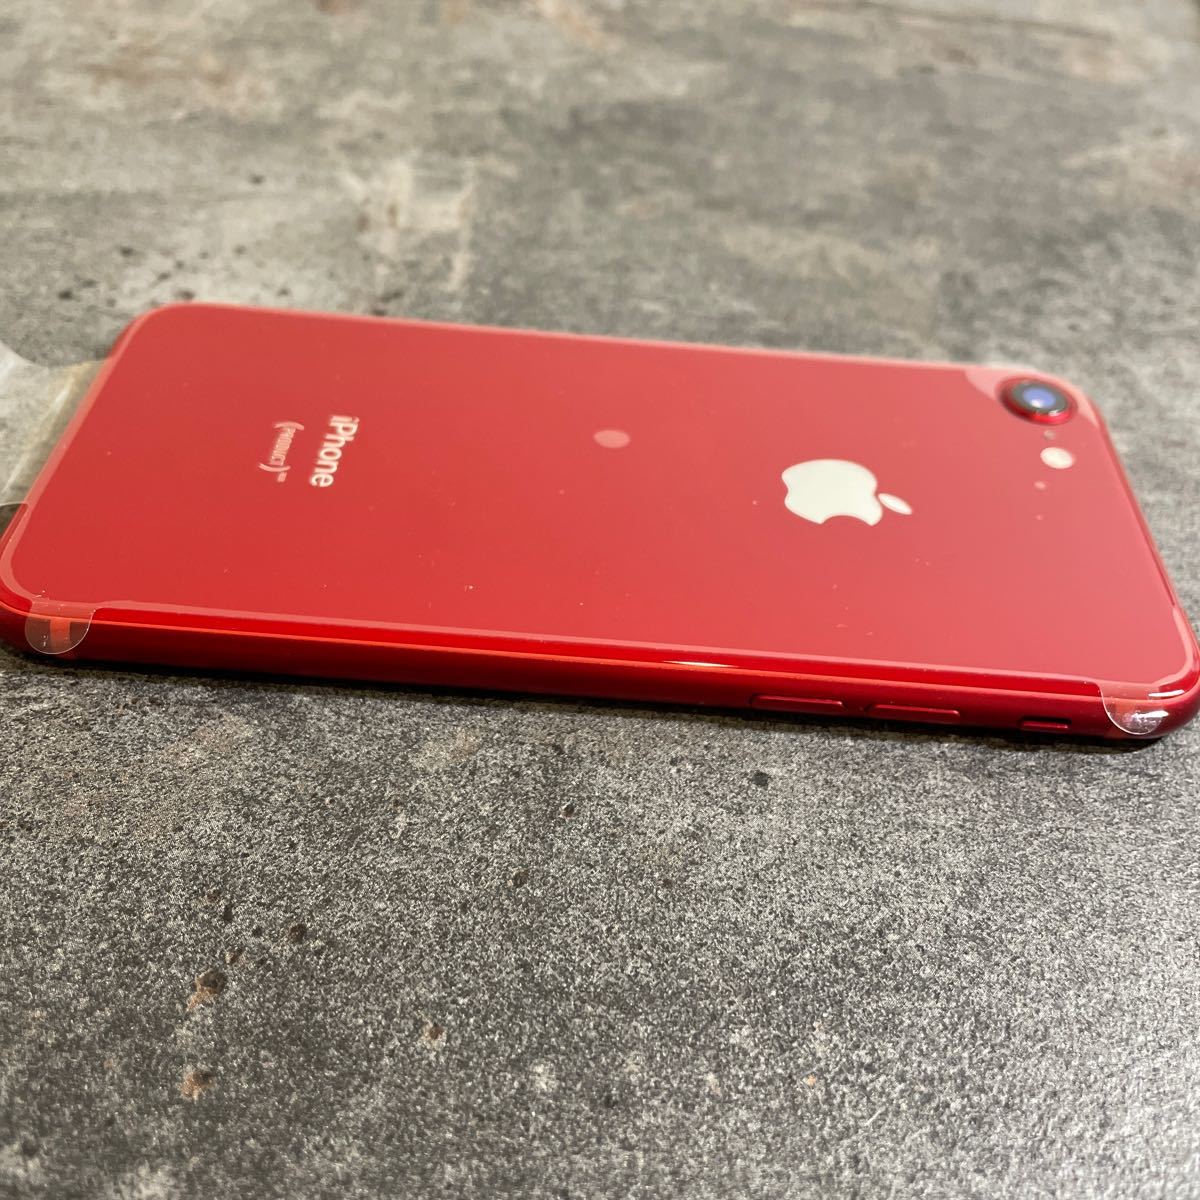 スマートフォン/携帯電話 スマートフォン本体 49456T iPhone8 64GB RED SIMフリー 新品交換品 未使用品 開封済み 